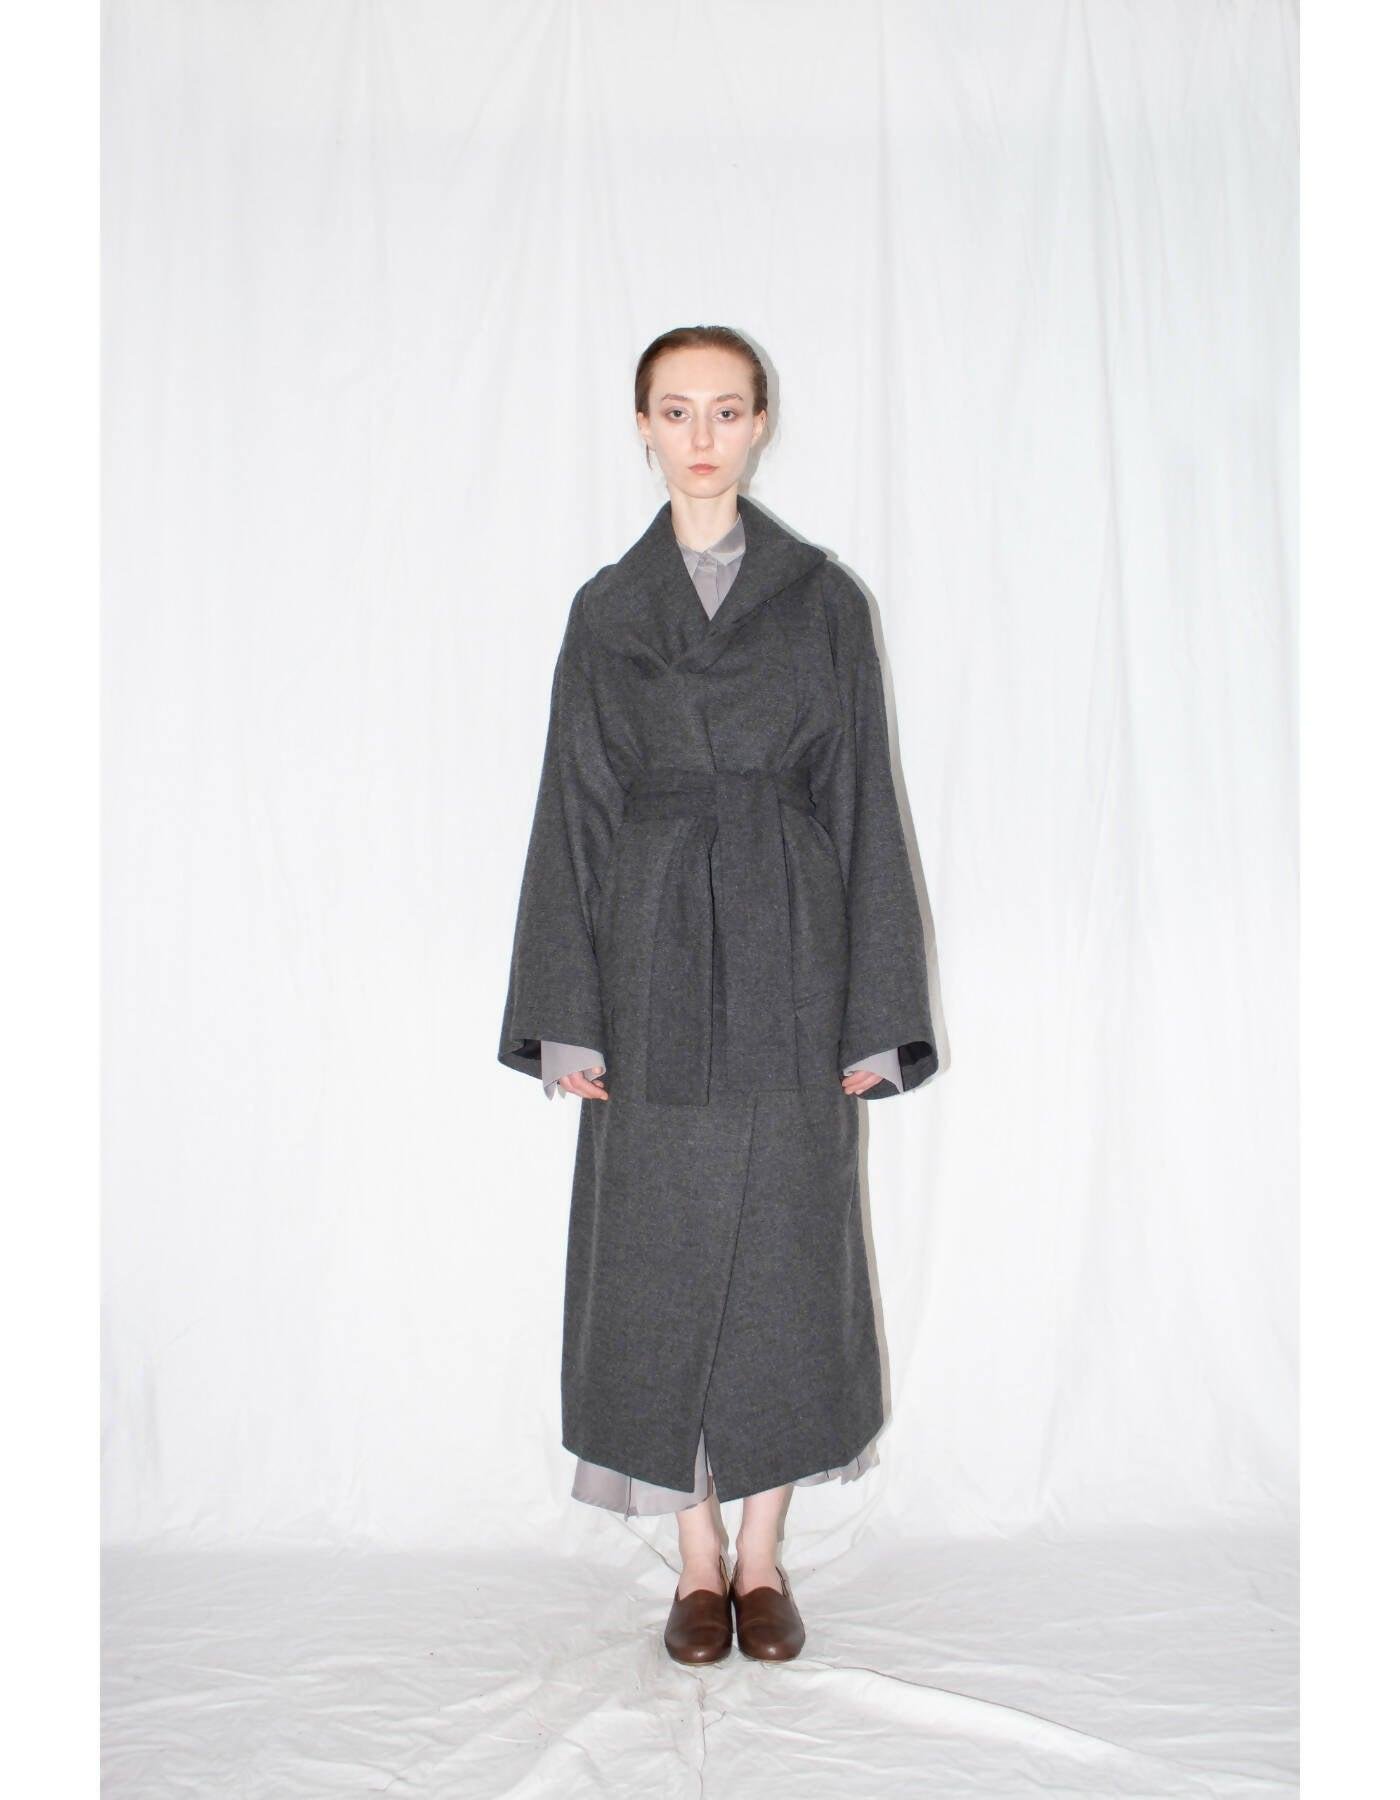 Grey Oversized Shawl Coat by LUDUS